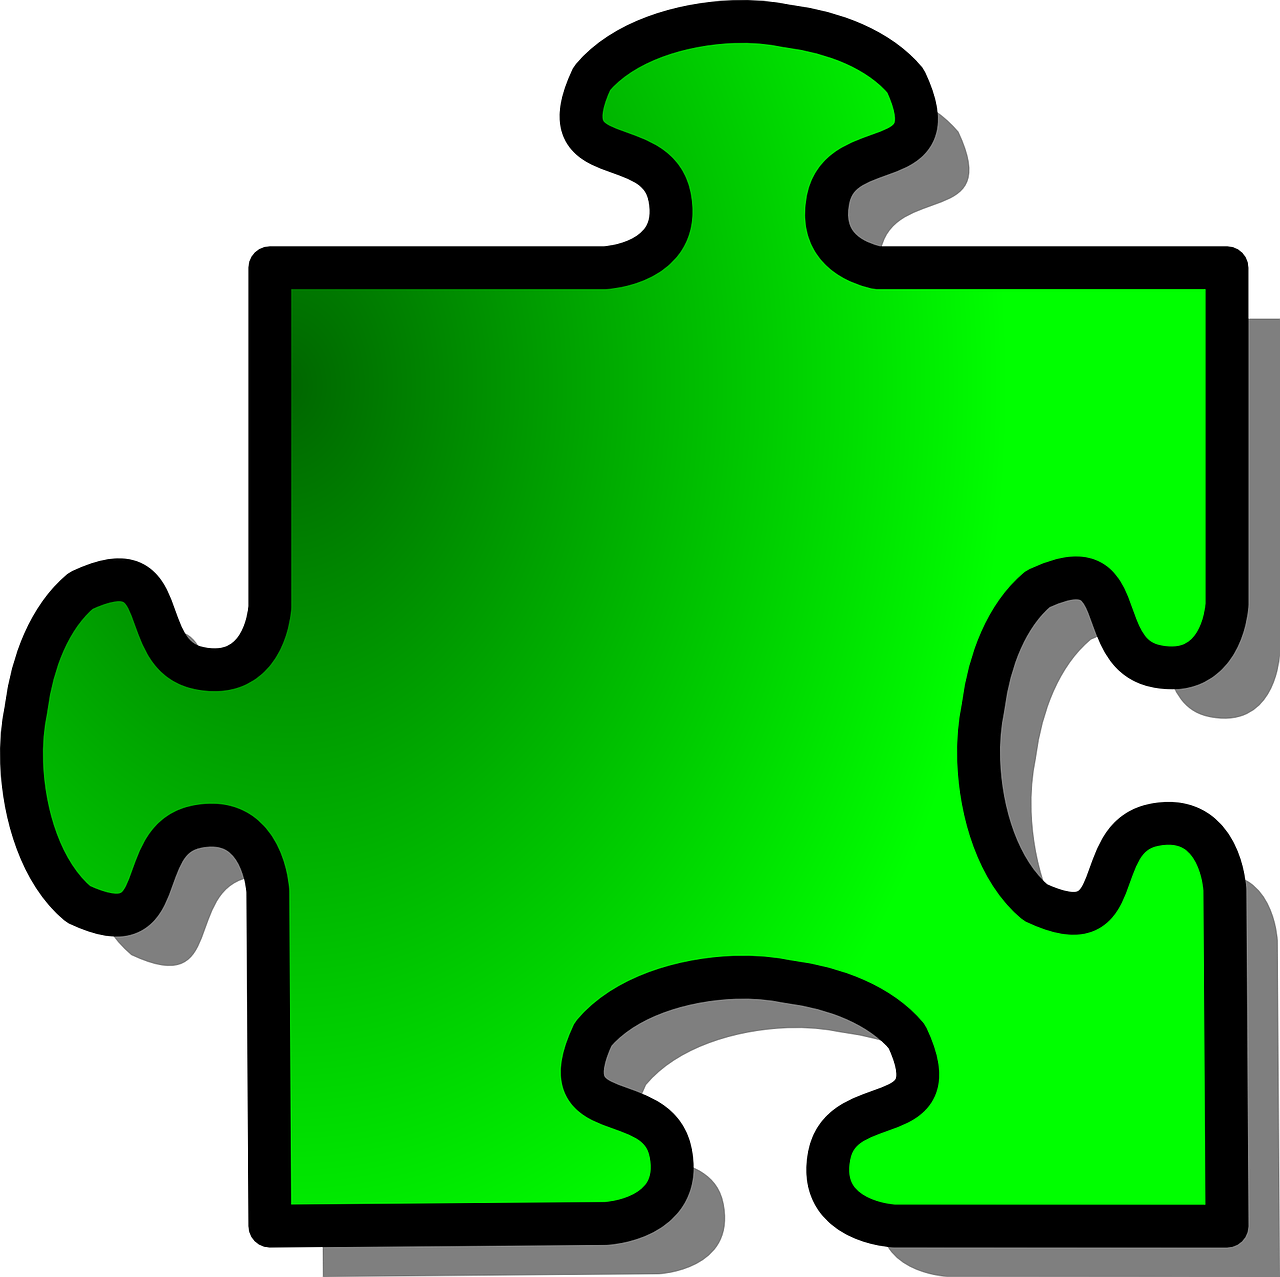 jigsaw puzzle piece free photo